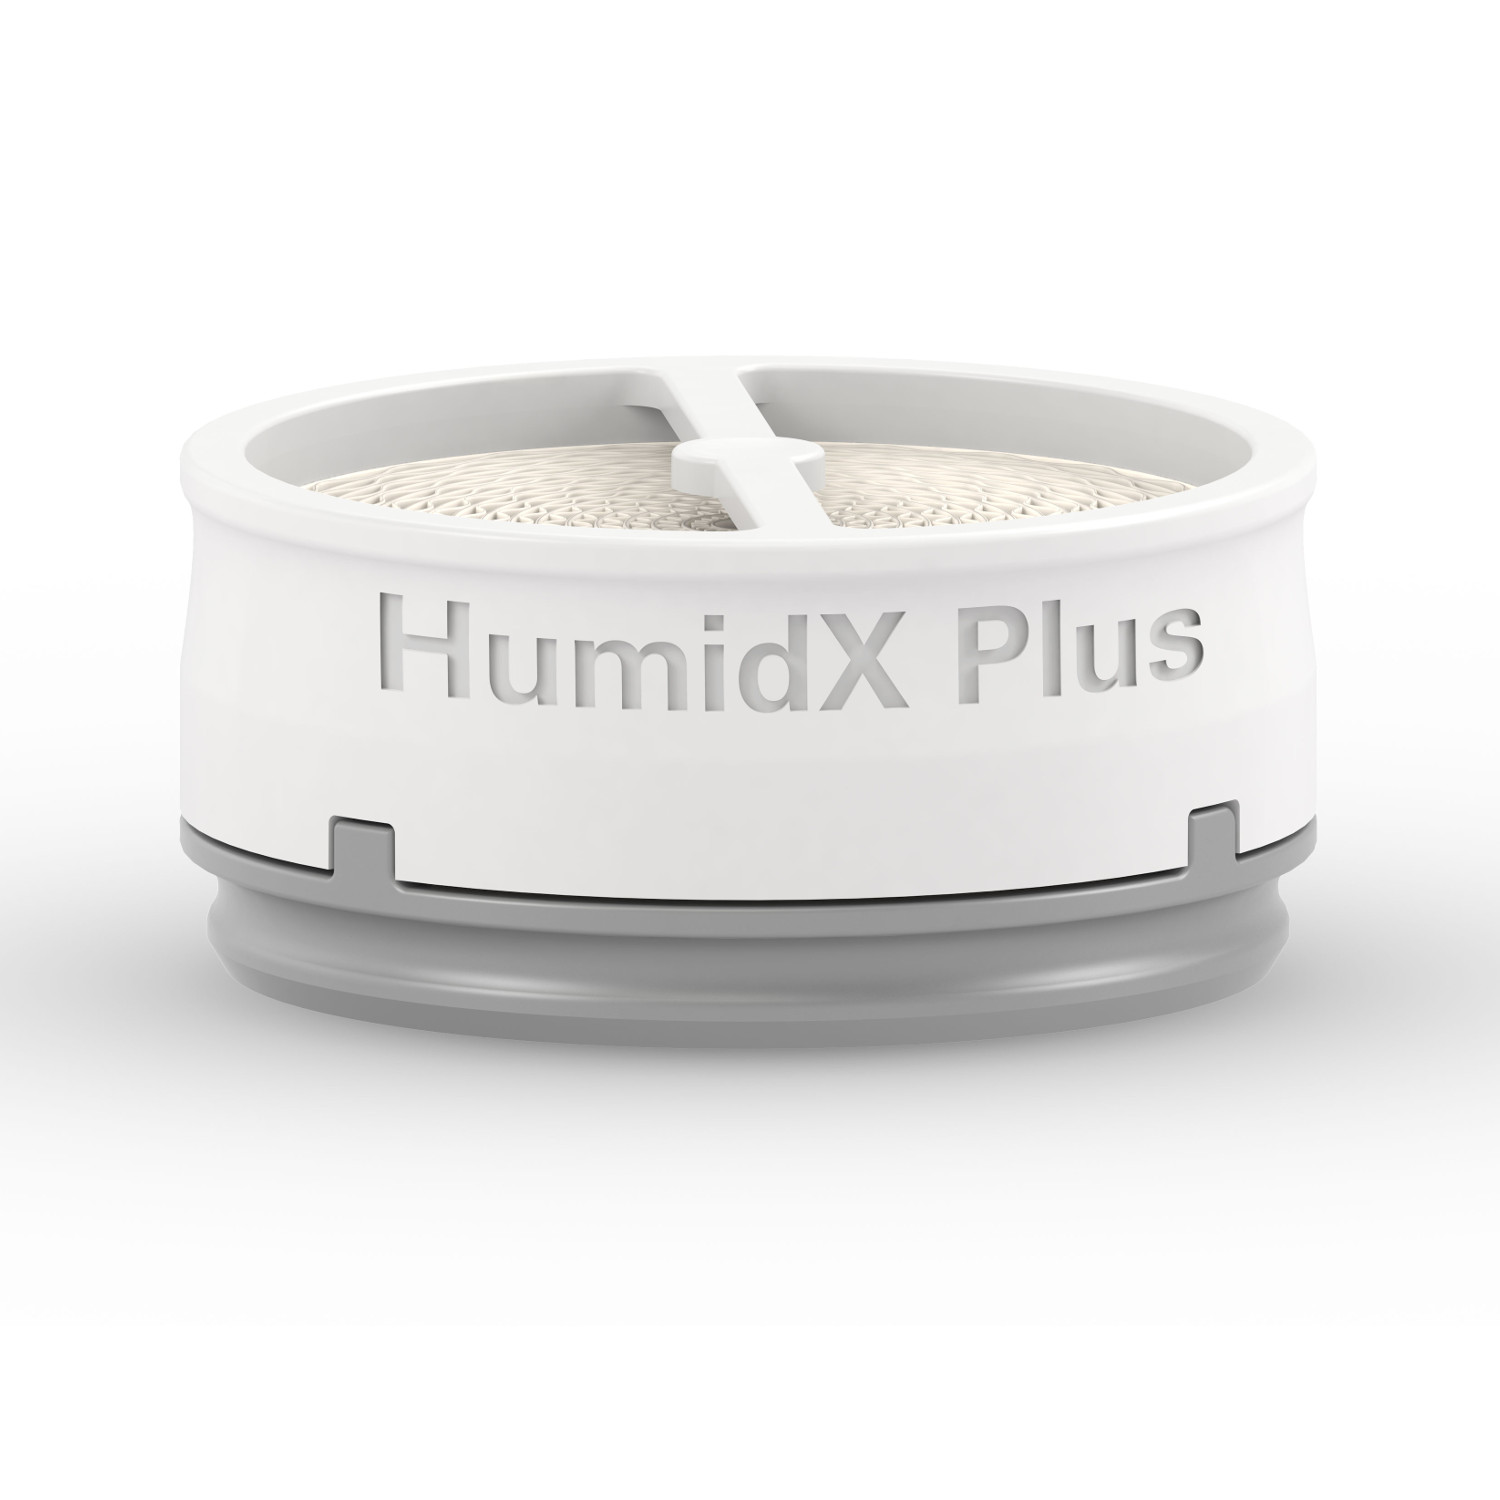 HumidX Plus wasserloser Befeuchter für AirMini von Resmed VE - 3 Stück